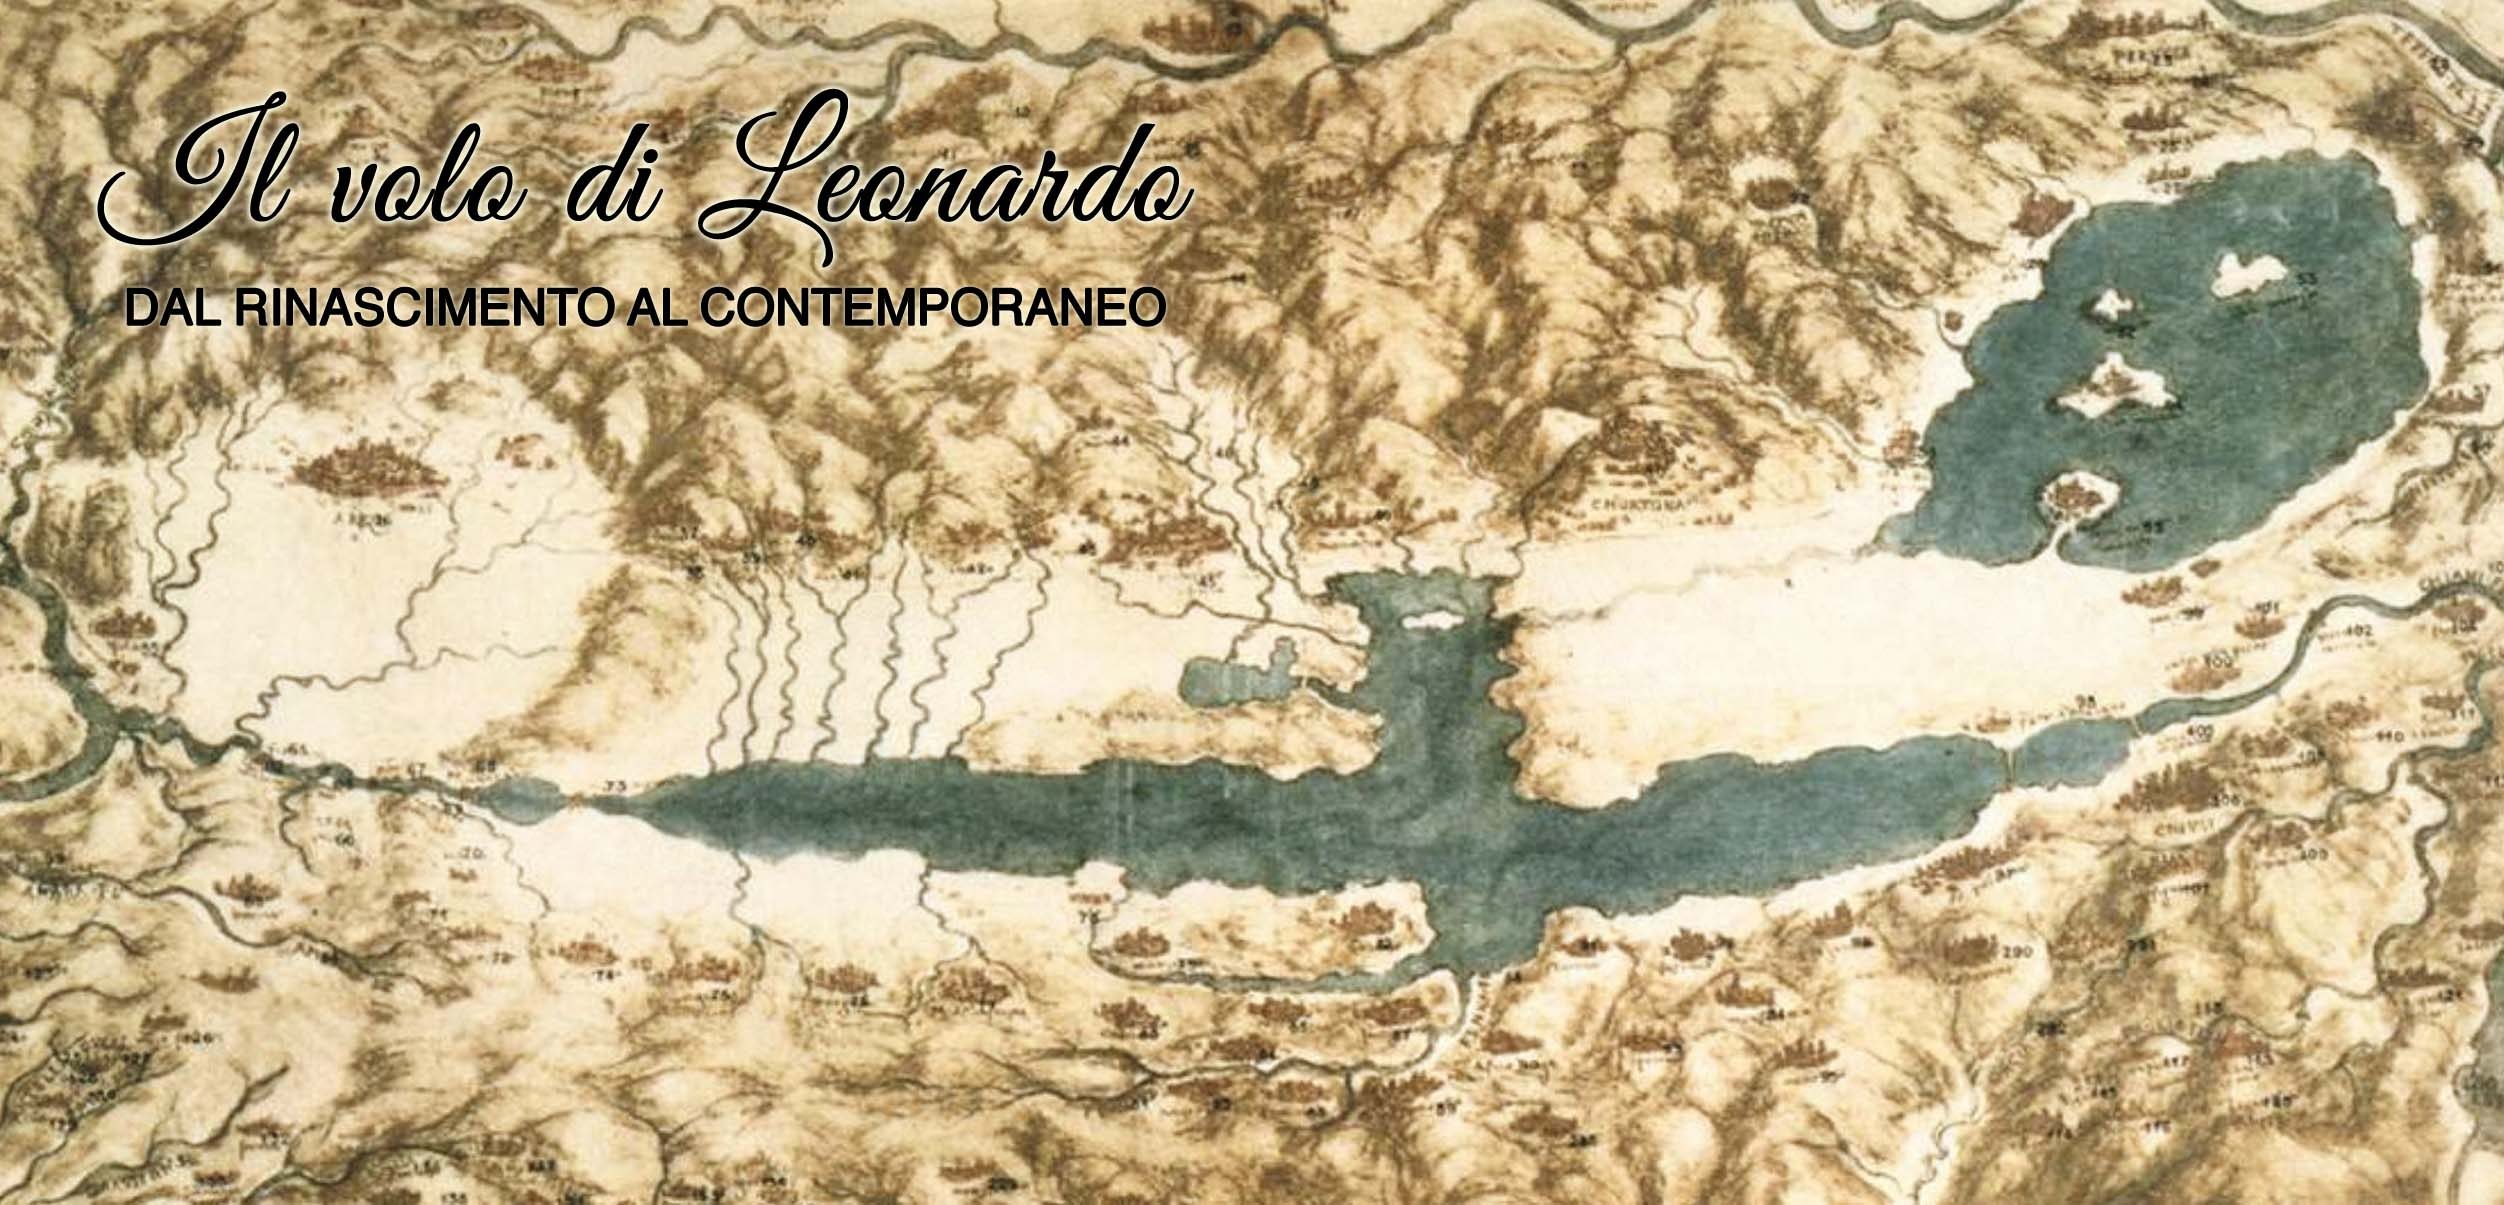 “Il volo di Leonardo, dal Rinascimento al Contemporaneo”, l’arte celebra il genio di Leonardo